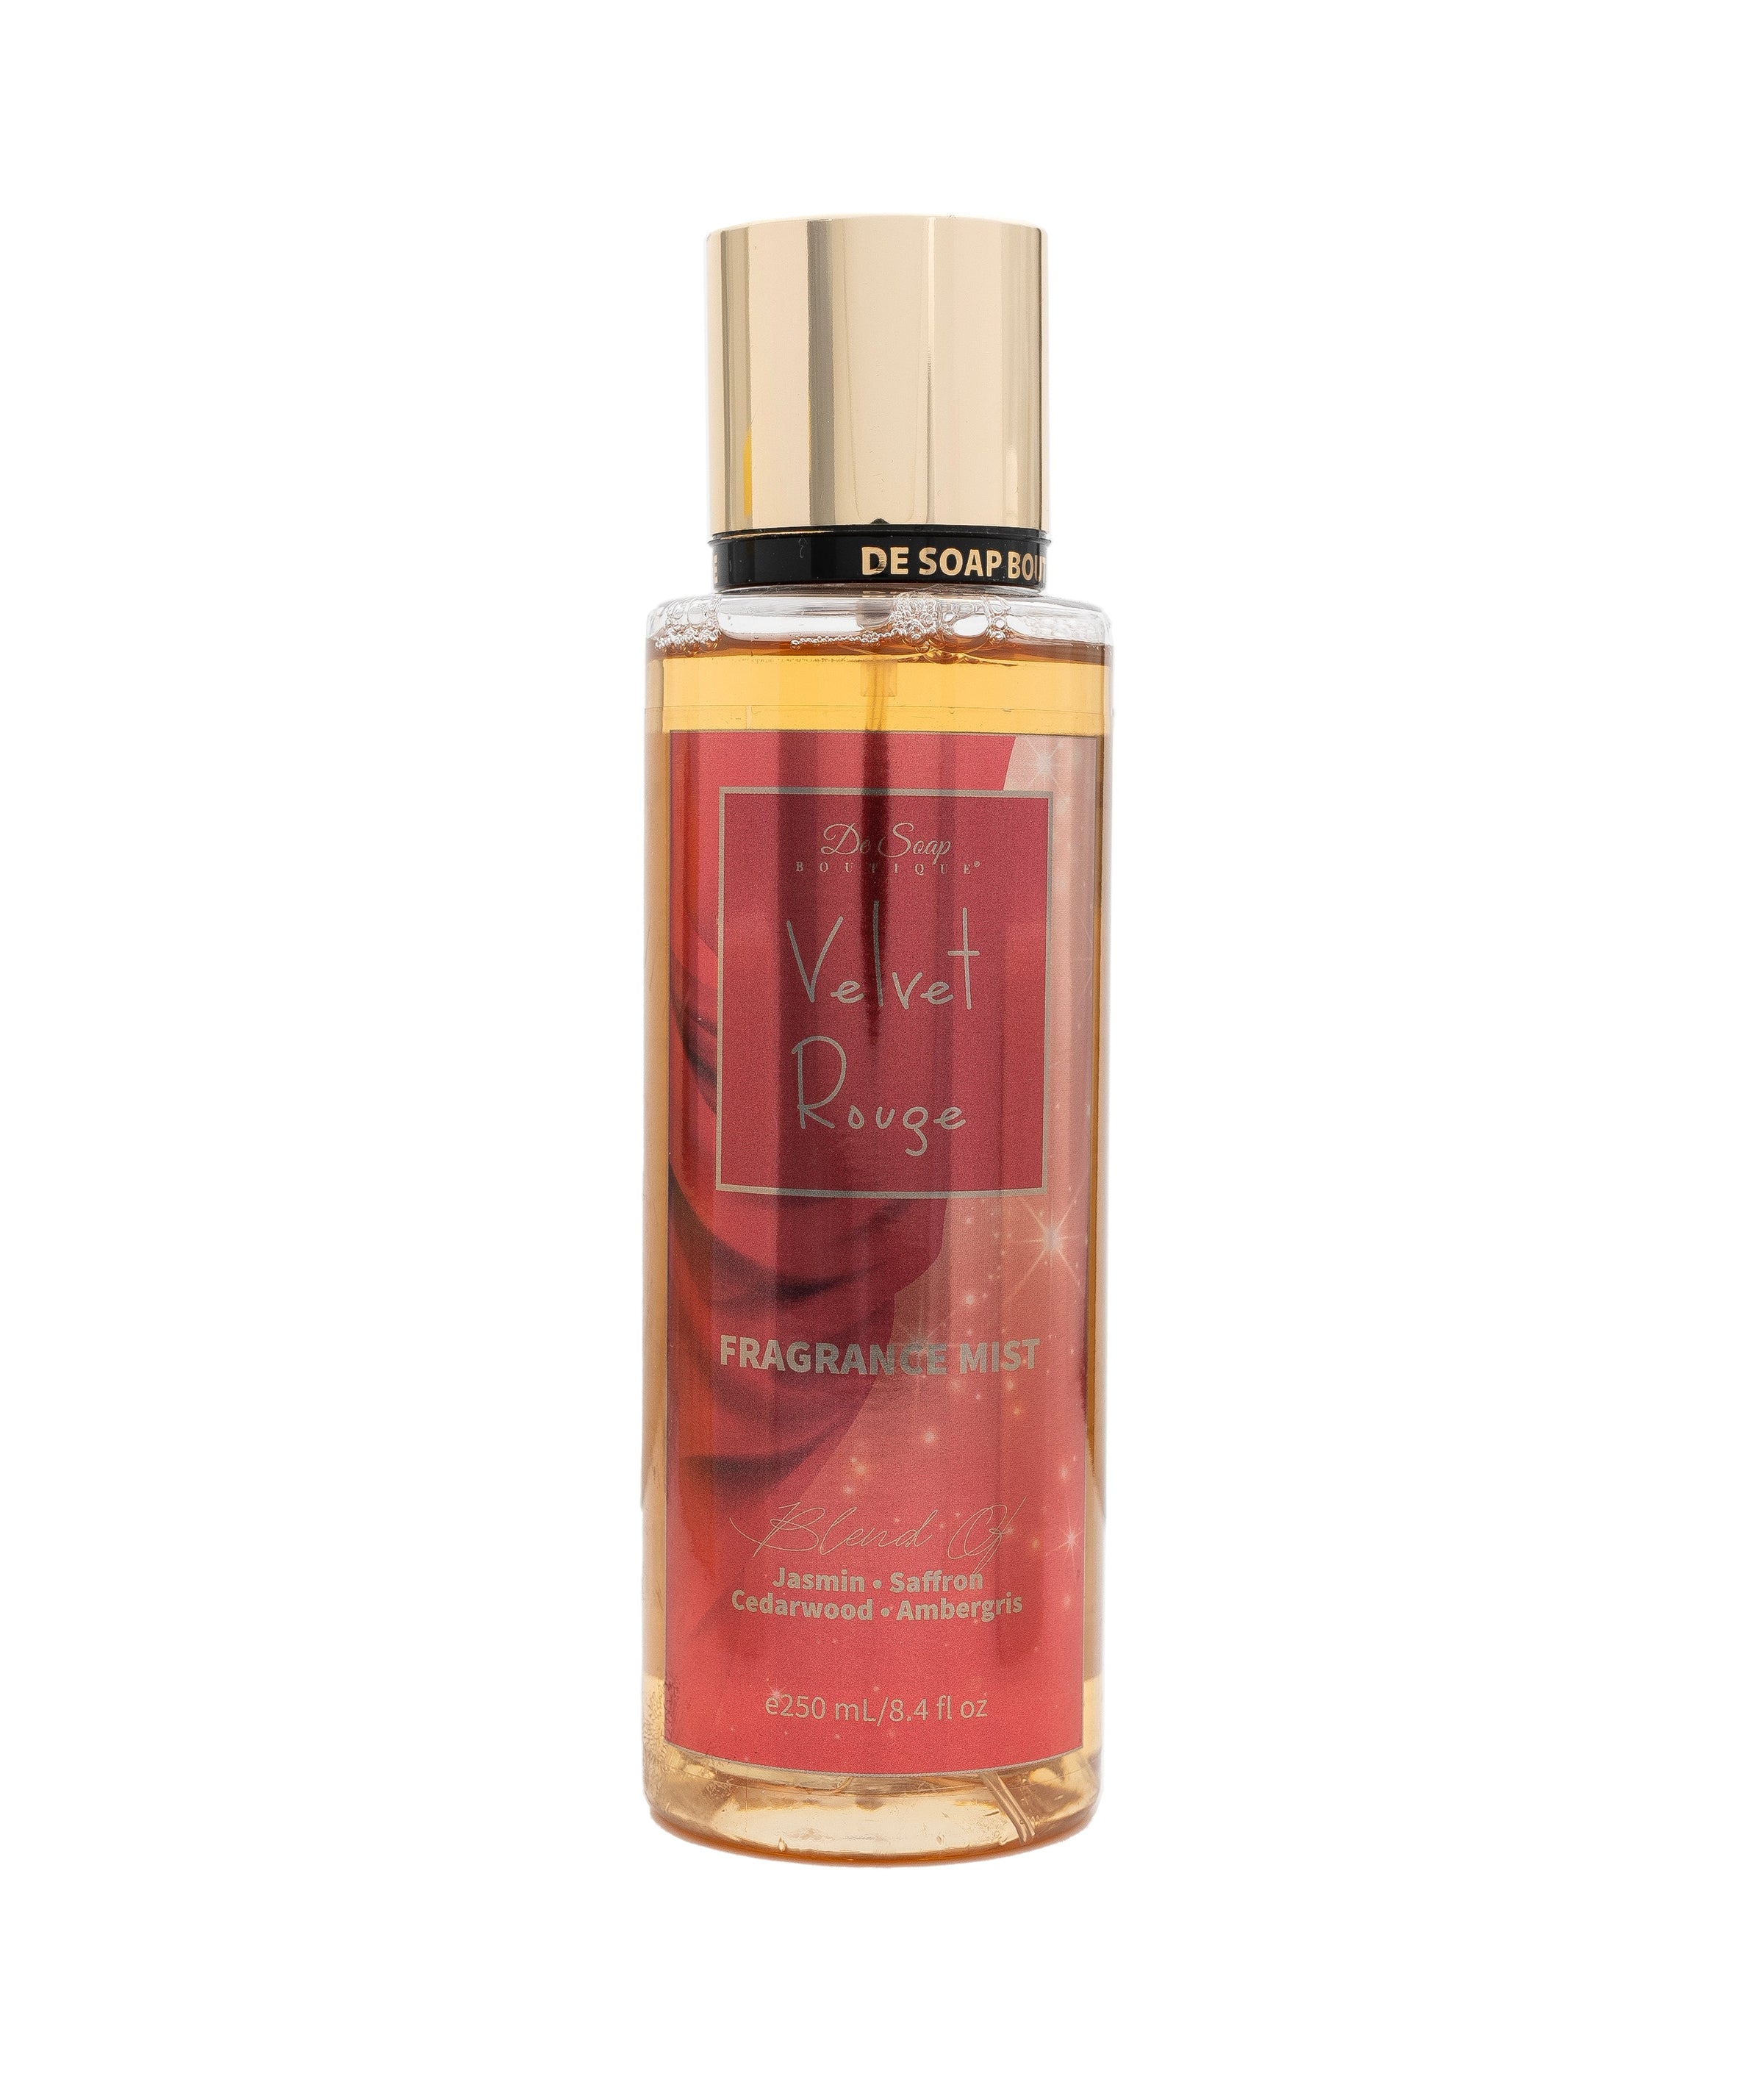 De Soap Boutique Exotic Fragrance Body Mist | Velvet Rouge 8.4 fl oz